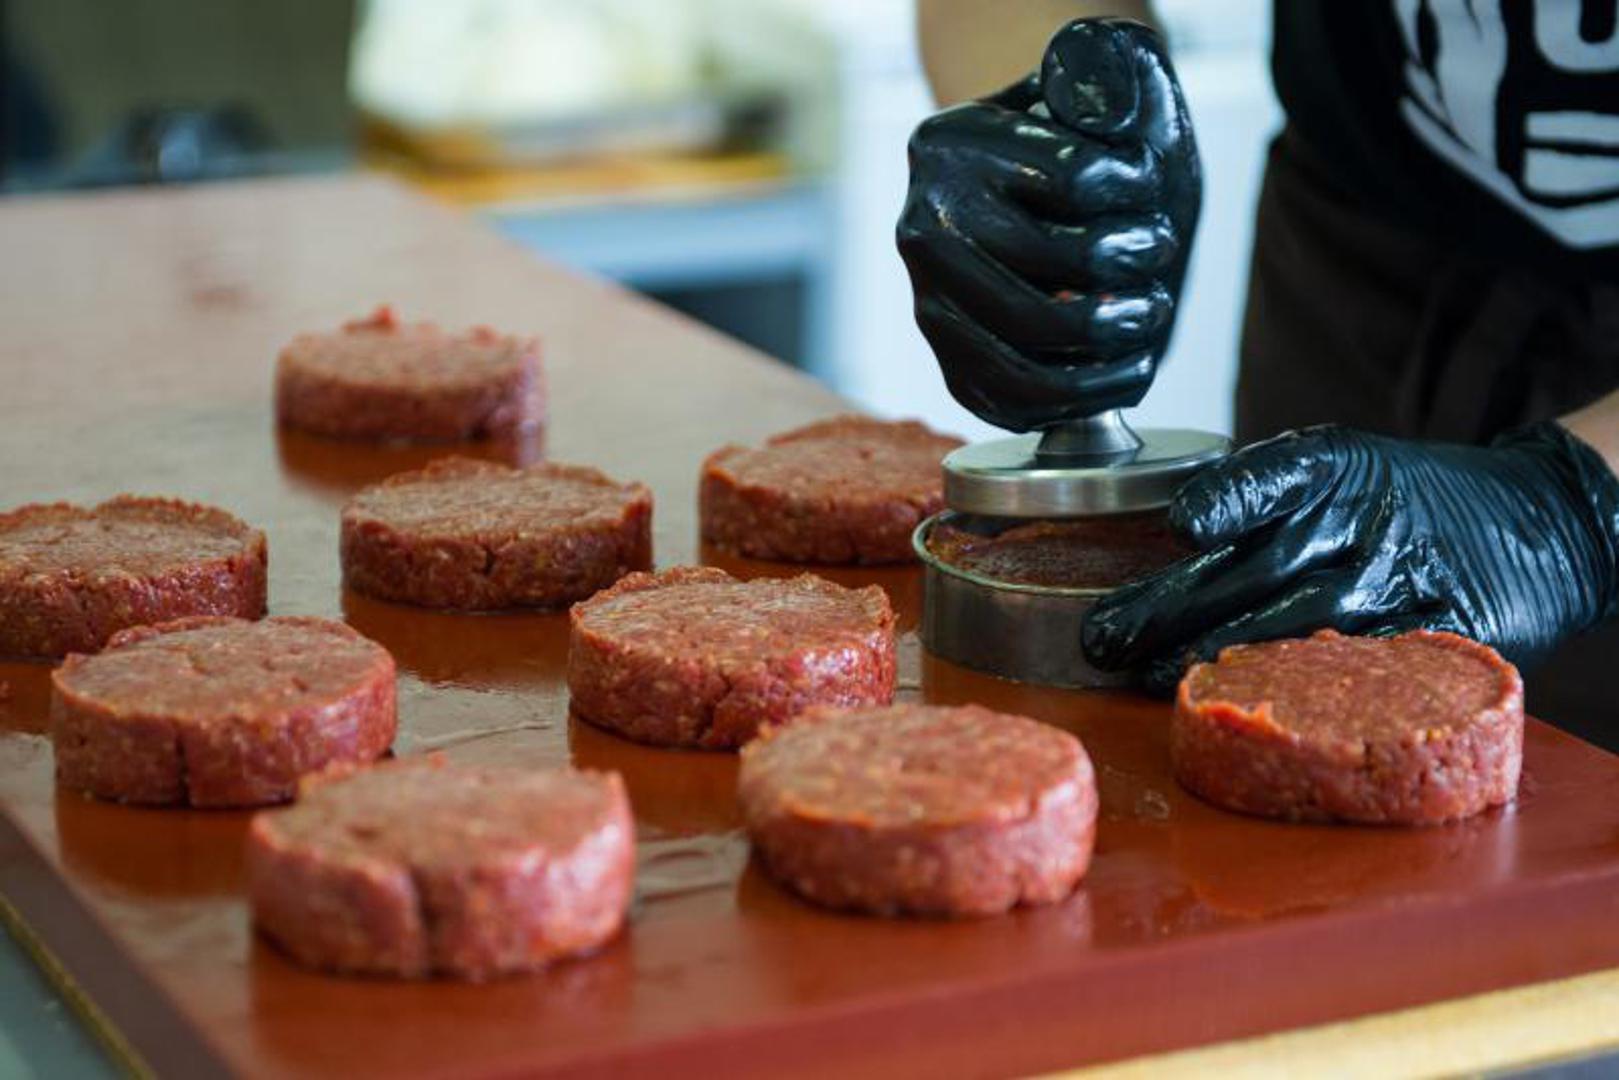 Izbjegavajte kupovati i prerađeno meso koje je puno nitrata.